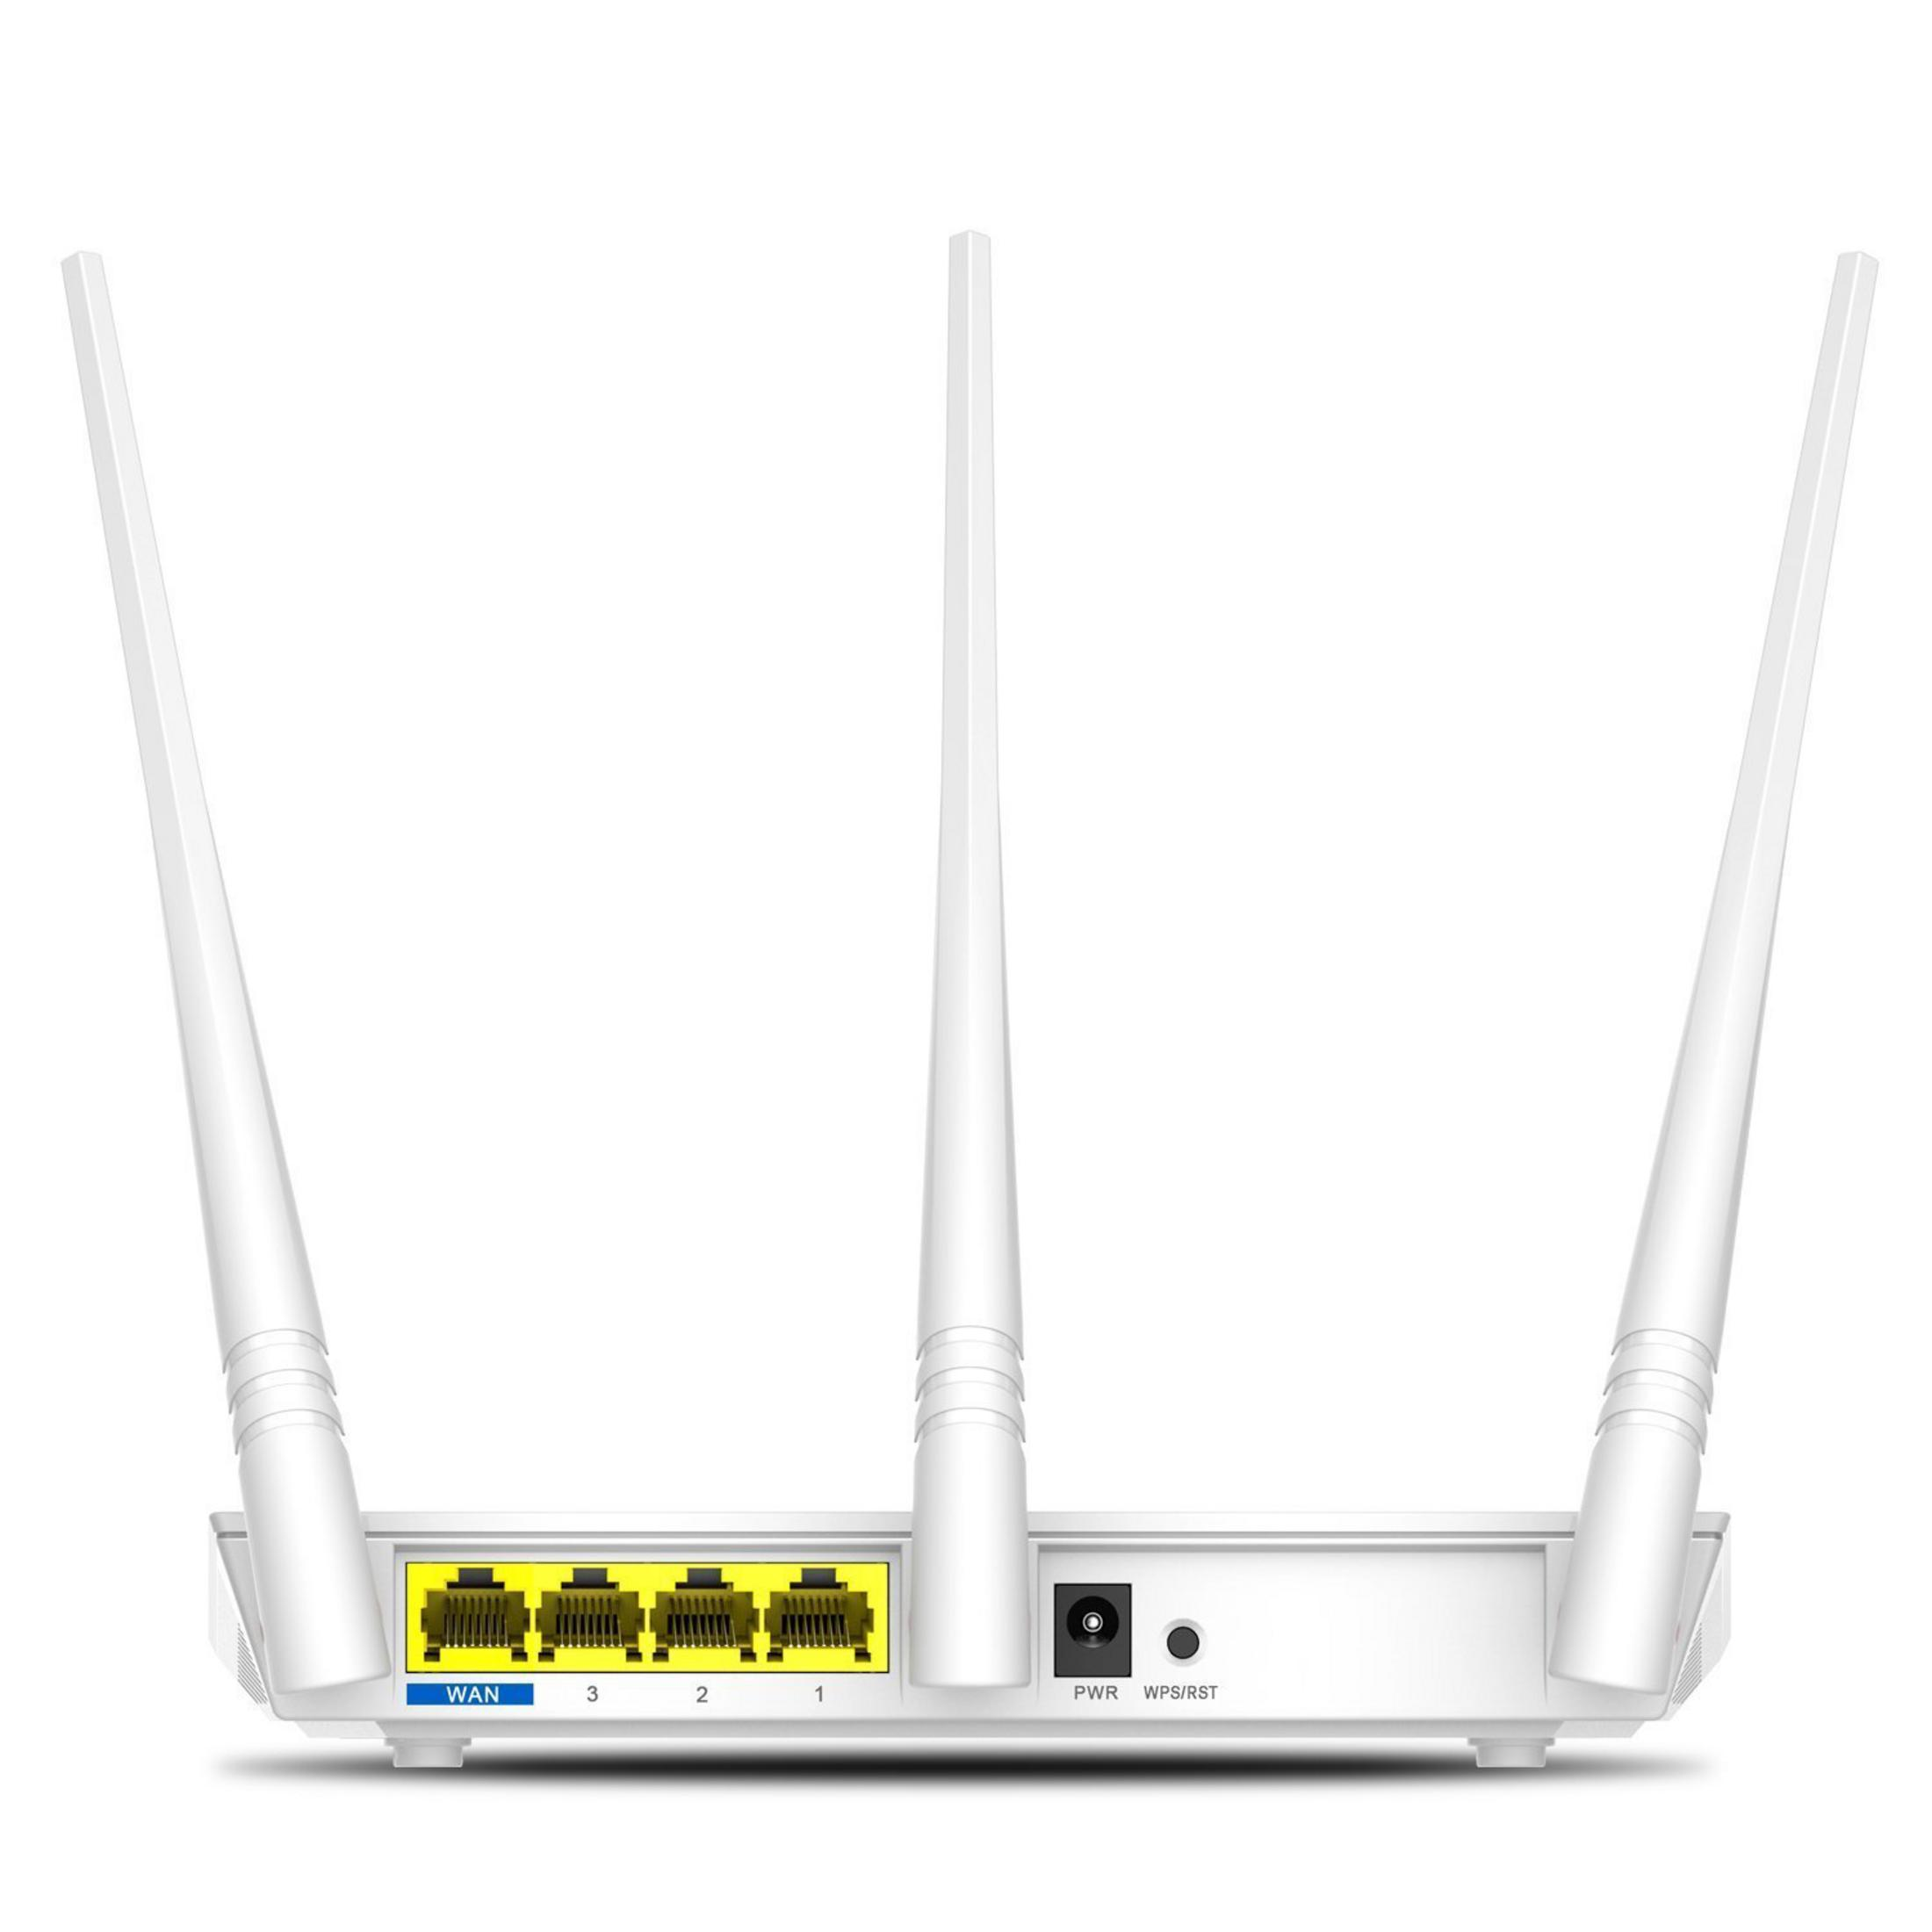 WLAN 300MBIT/S F3 300 TENDA Mbit/s Router ROUTER